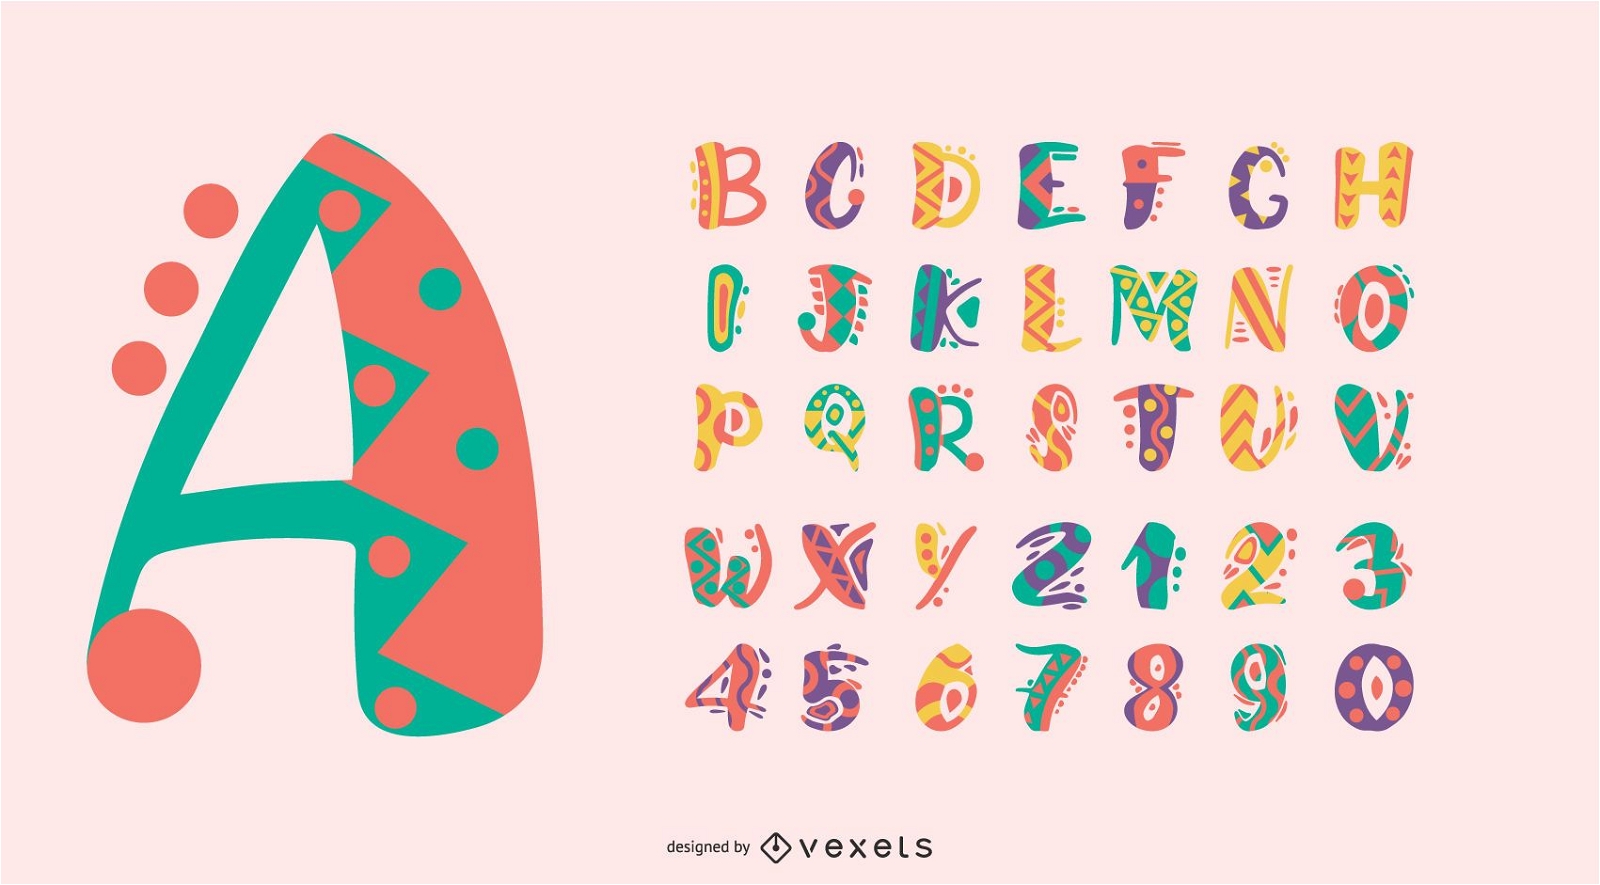 Bunter Alphabet-Buchstabennummernsatz des mexikanischen Stils